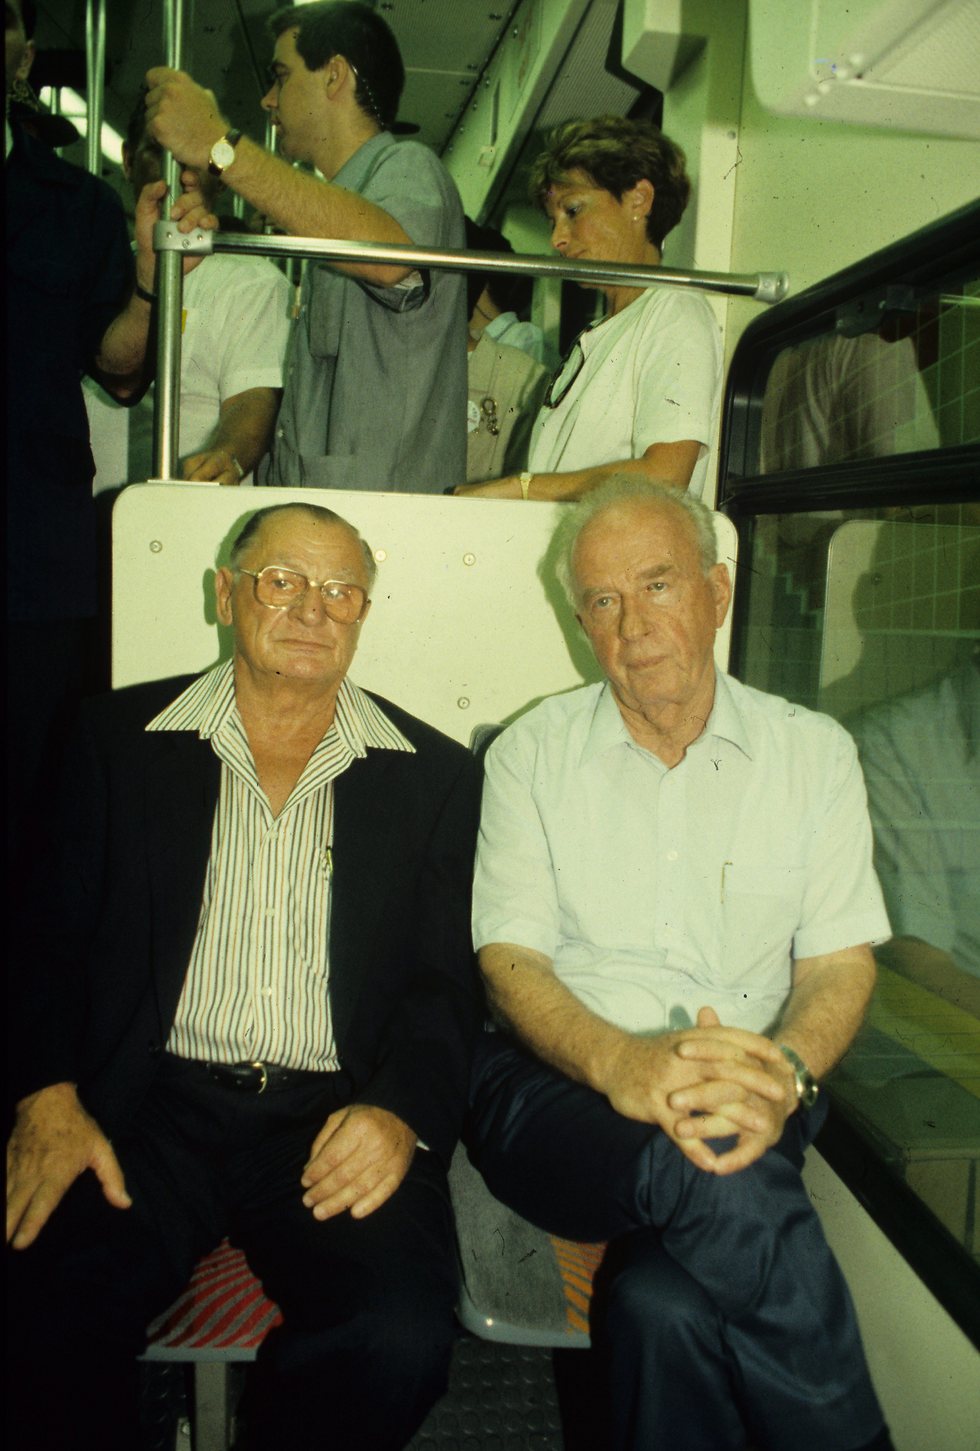 רבין ז"ל וראש העיר גוראל ז"ל בפתיחת הכרמלית החדשה, 1992 (צילום: רון סולומון) (צילום: רון סולומון)